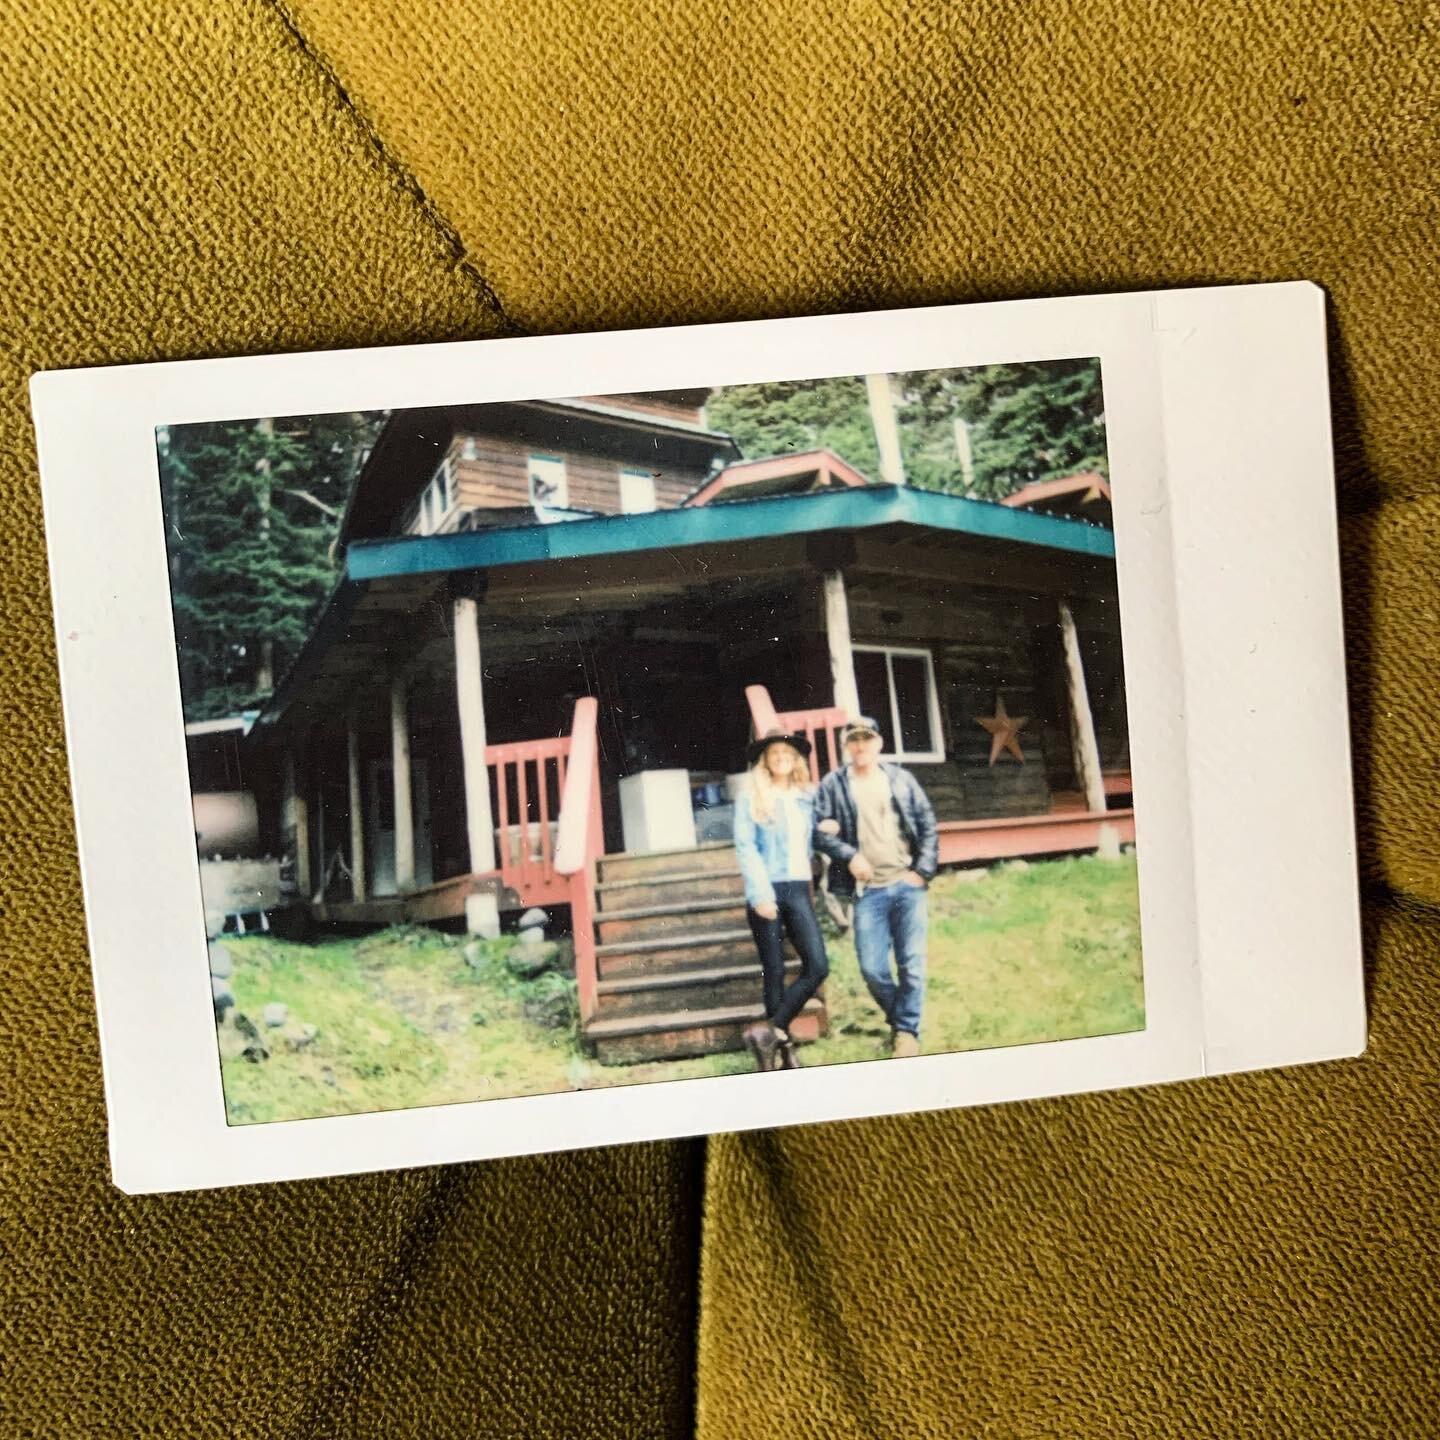 We did a thing 🤍 @jasonmulloy

#1111 #homesweethome #alaska #magicisreal